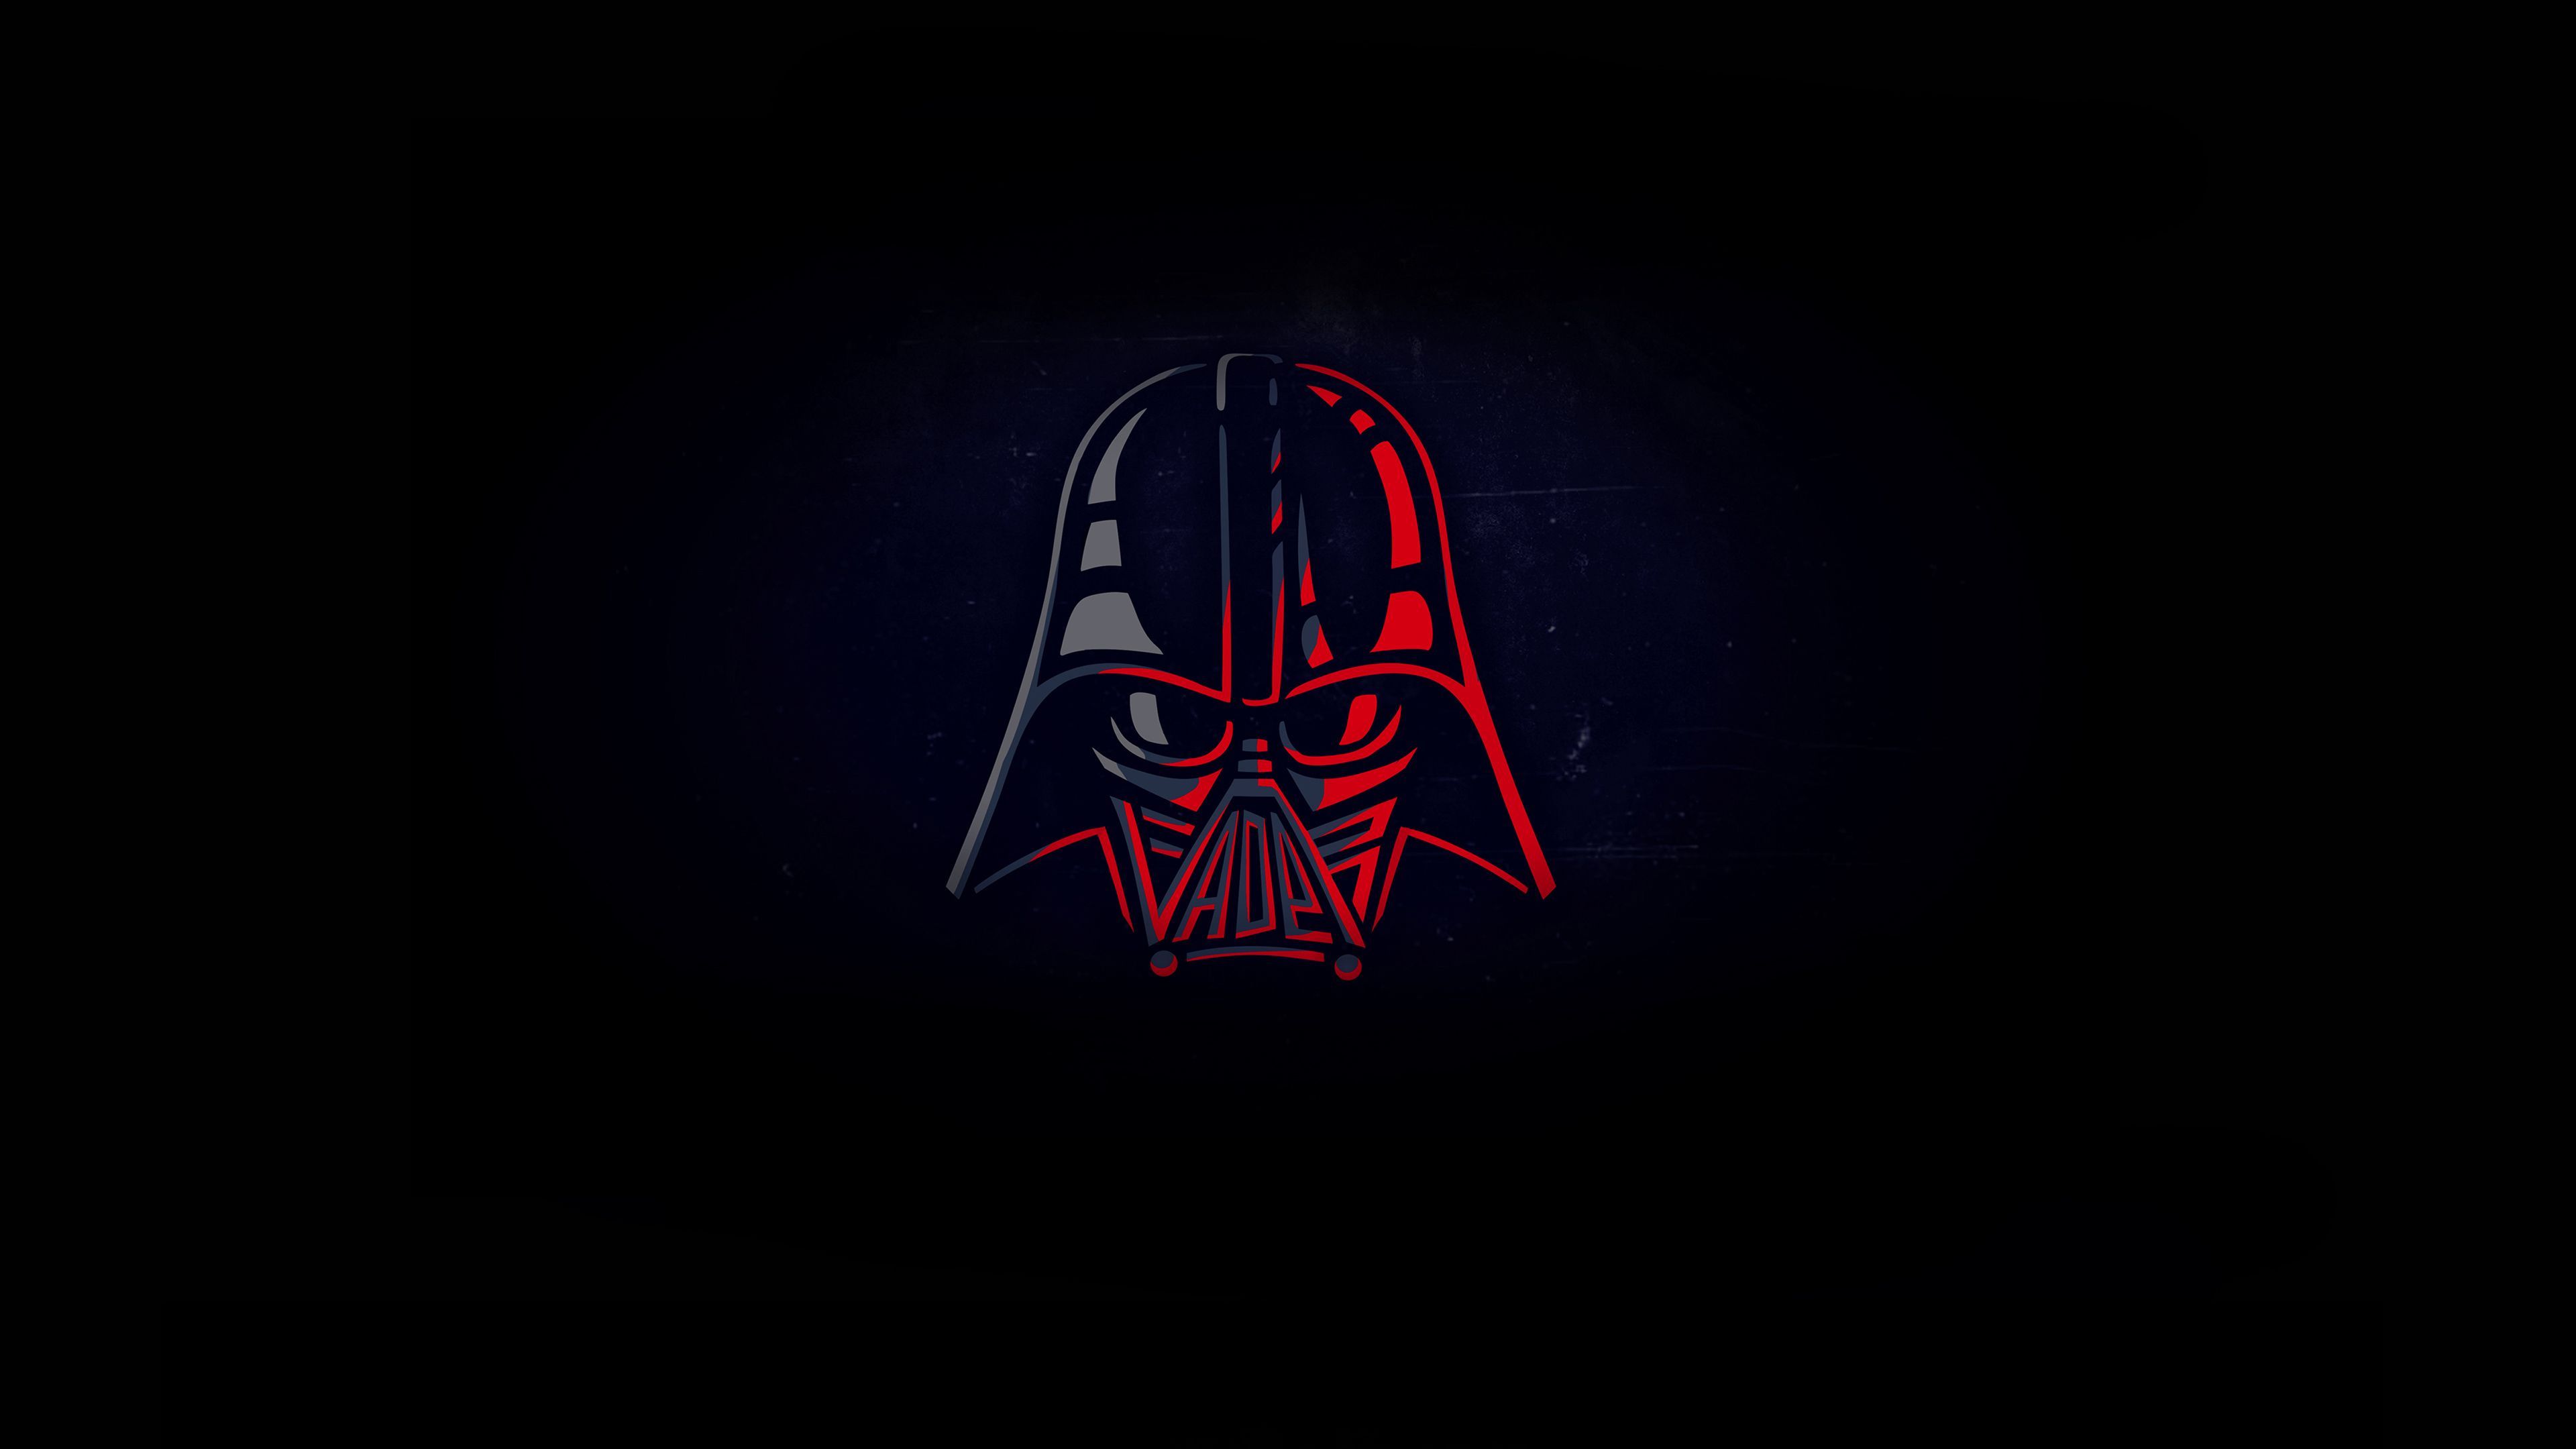 Darth Vader HD Star Wars Darth Vader Wallpapers  HD Wallpapers  ID 97322